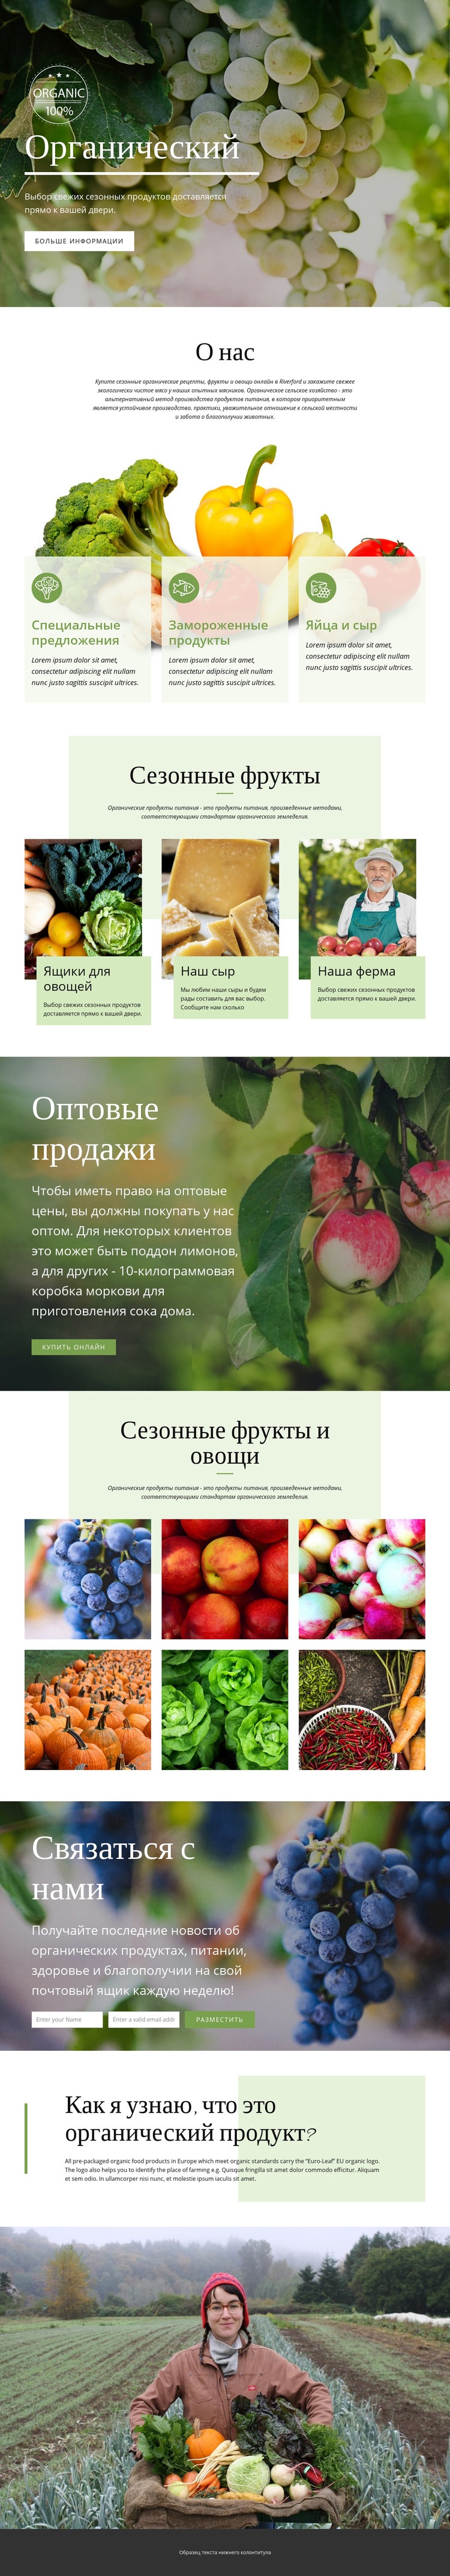 Здоровее с органическими продуктами Дизайн сайта